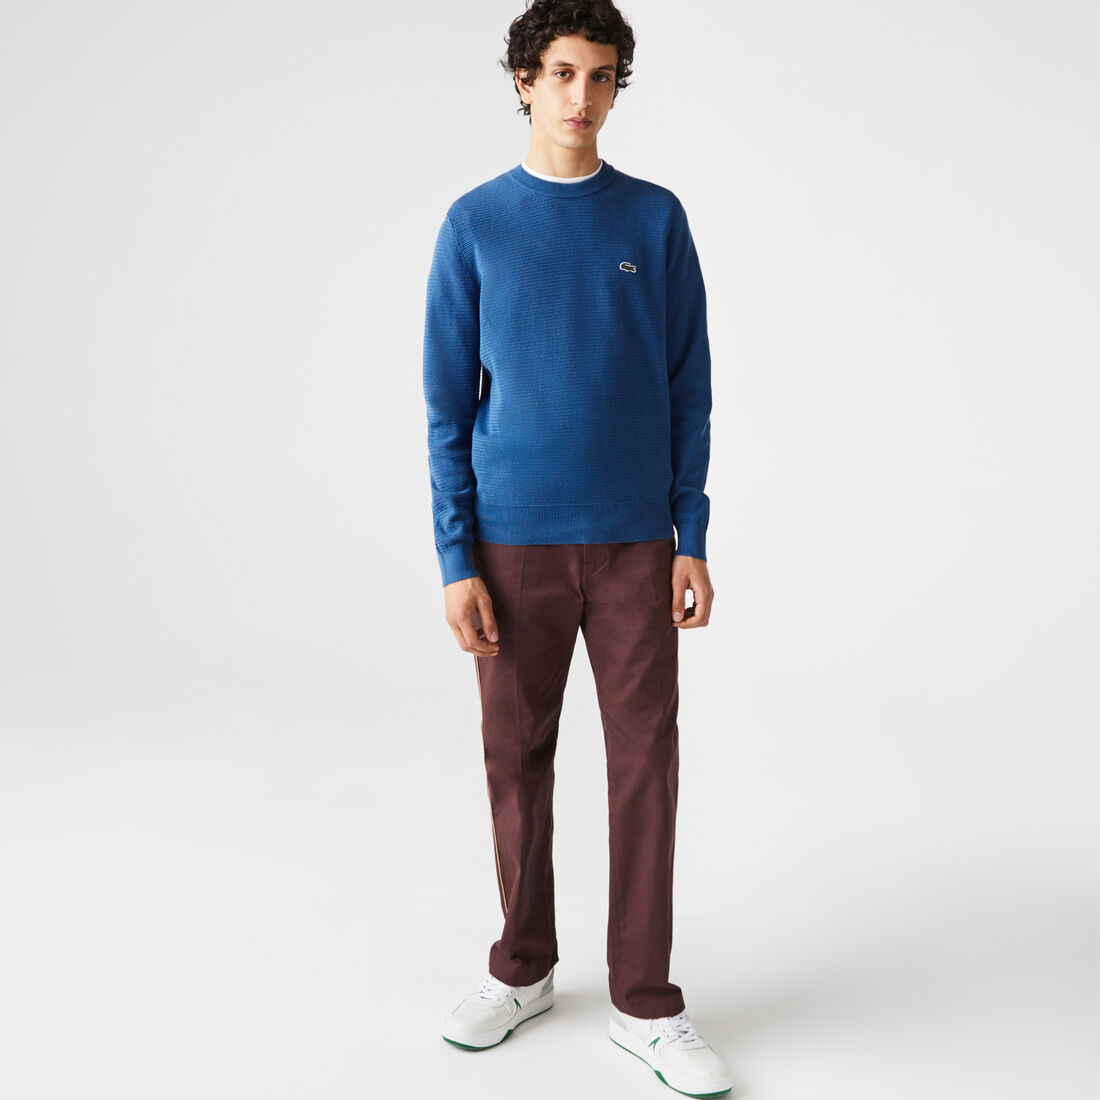 Lacoste Crew Neck Textured Organic Baumwoll Pullover Herren Blau | PTLX-35267